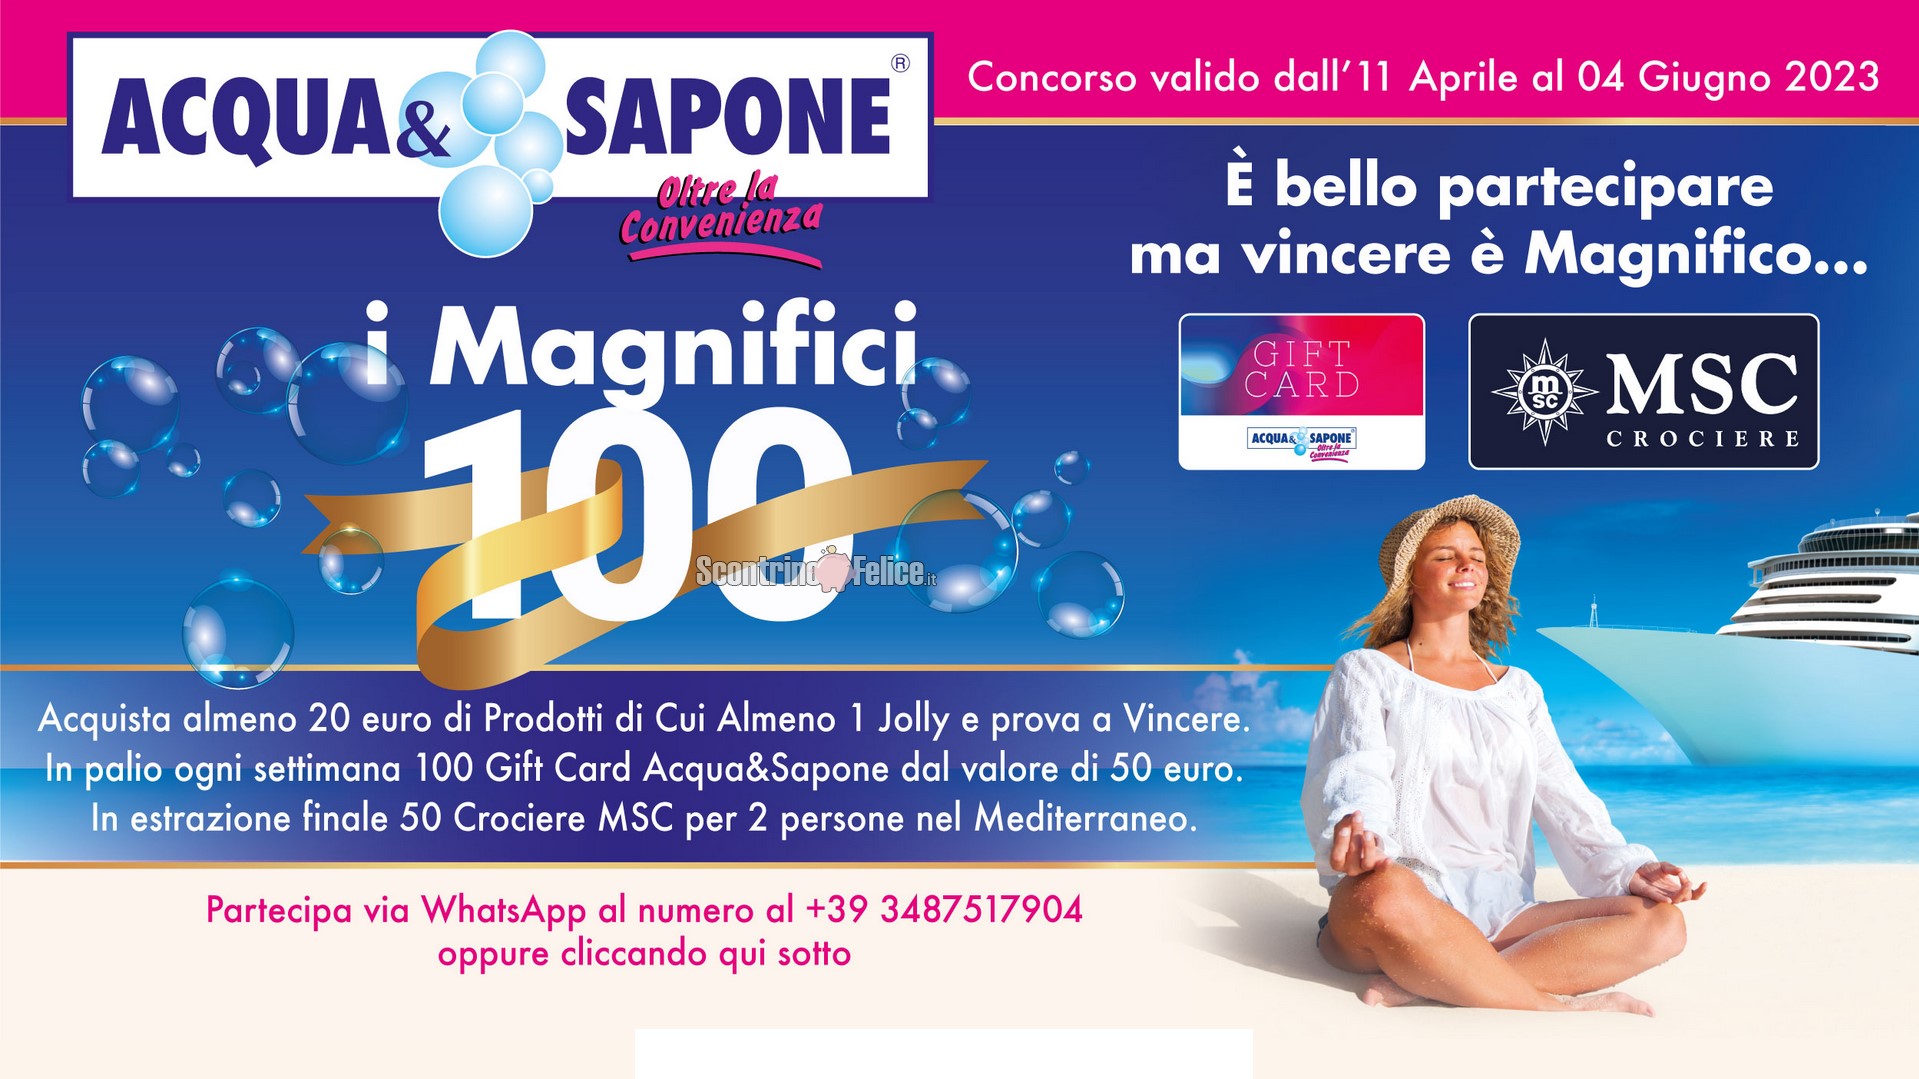 Concorso Acqua e Sapone Sicilia "I MAGNIFICI 100": vinci gift card da 50 euro e 50 crociere MSC